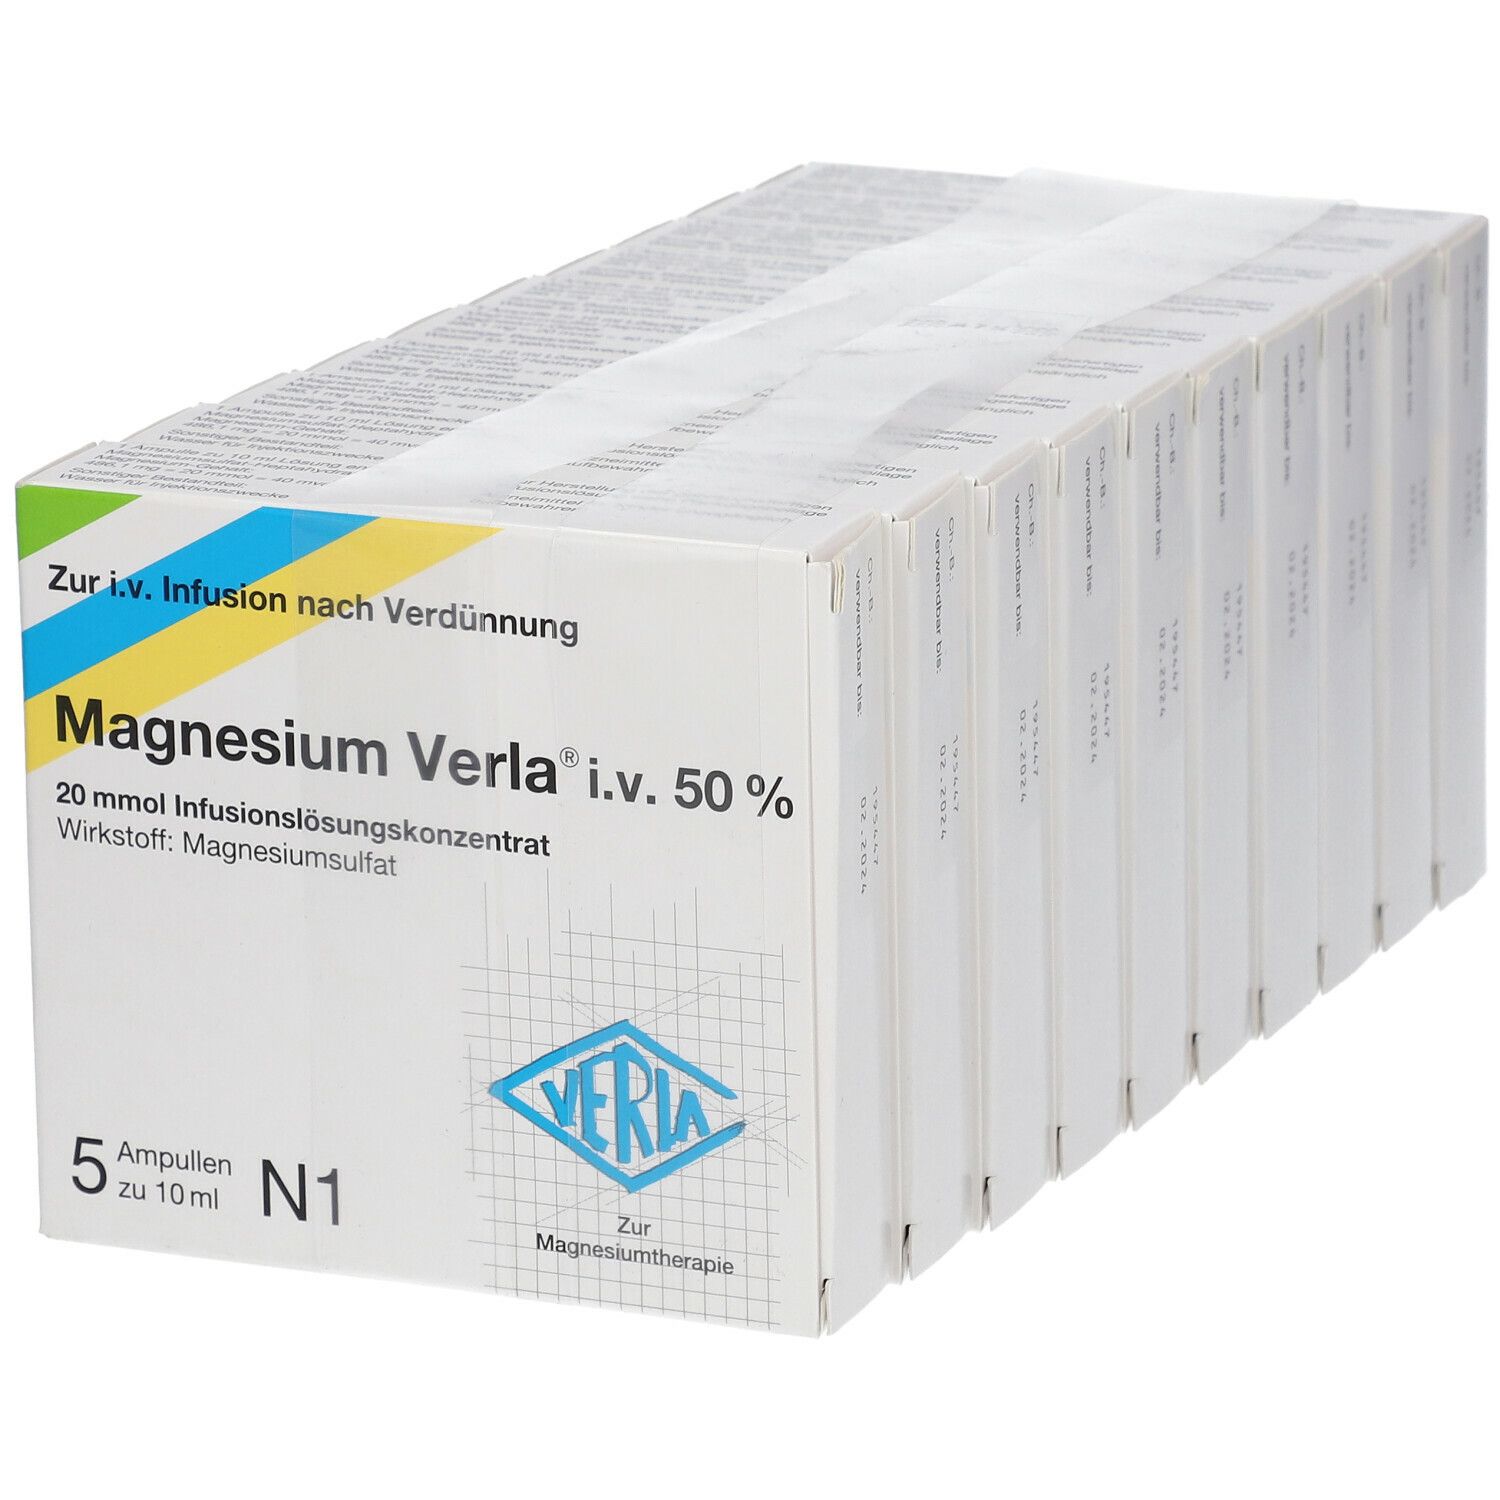 Magnesium Verla® i.v. 50% Infus.-Lsg.